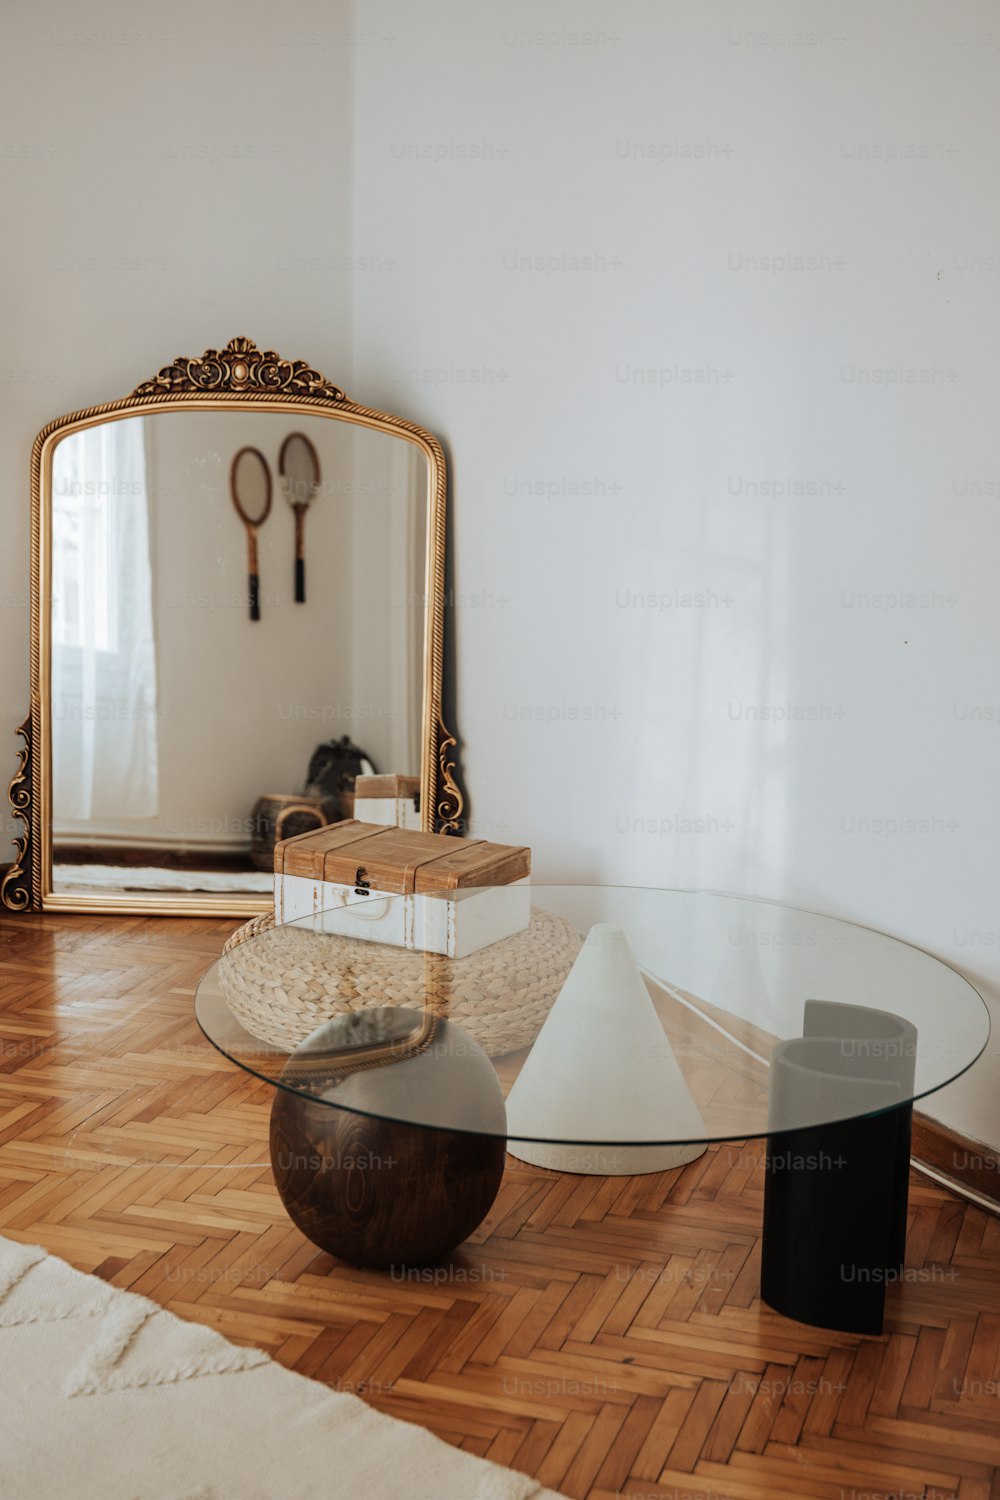 ein Wohnzimmer mit Tisch, Spiegel und anderen Gegenständen